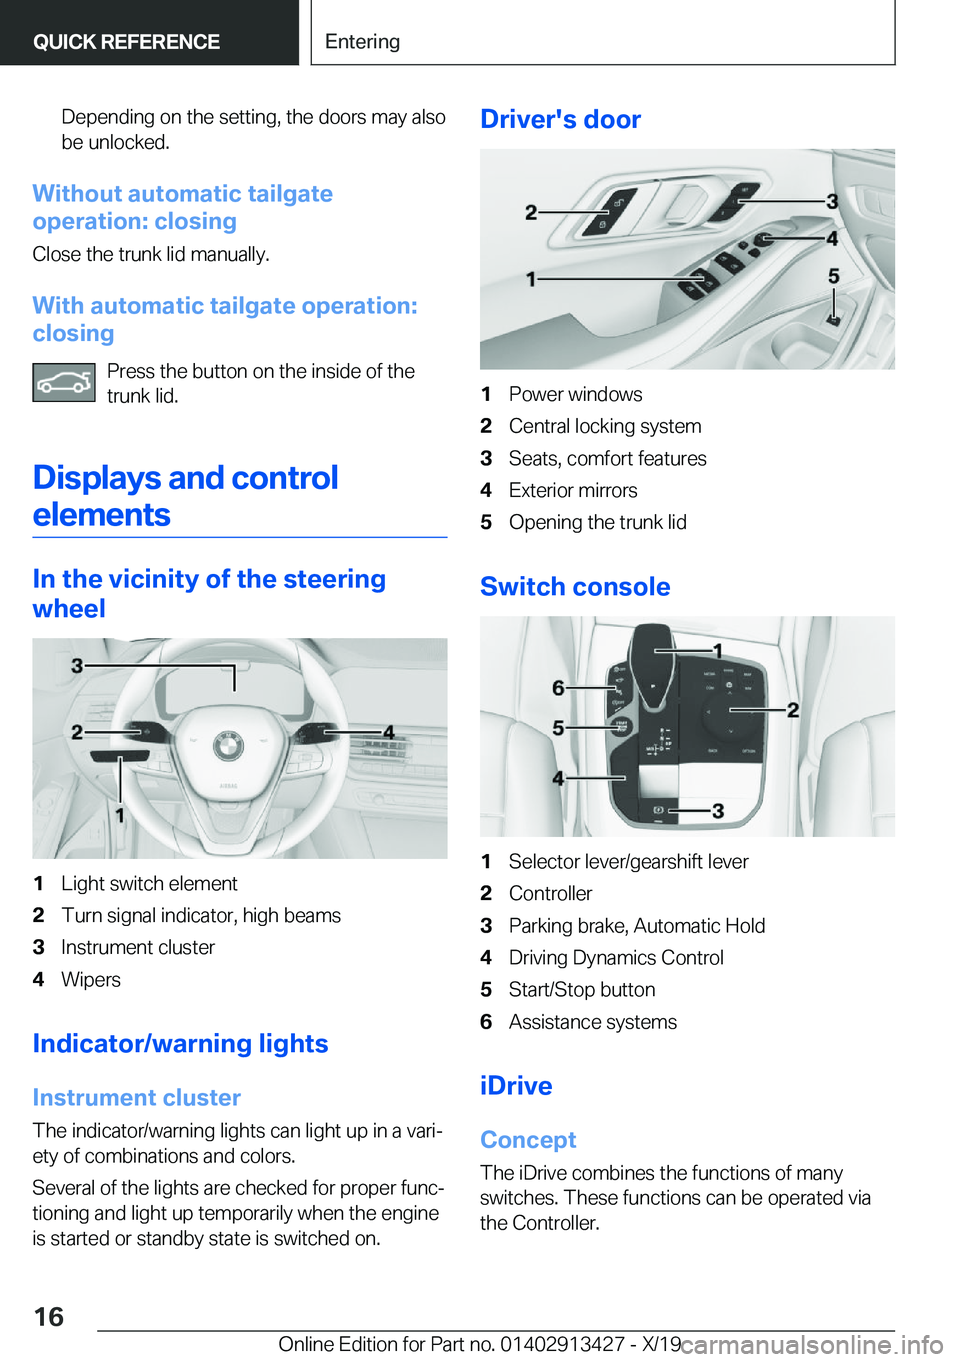 BMW 3 SERIES 2020 User Guide �D�e�p�e�n�d�i�n�g��o�n��t�h�e��s�e�t�t�i�n�g�,��t�h�e��d�o�o�r�s��m�a�y��a�l�s�o�b�e��u�n�l�o�c�k�e�d�.
�W�i�t�h�o�u�t��a�u�t�o�m�a�t�i�c��t�a�i�l�g�a�t�e
�o�p�e�r�a�t�i�o�n�:��c�l�o�s�i�n